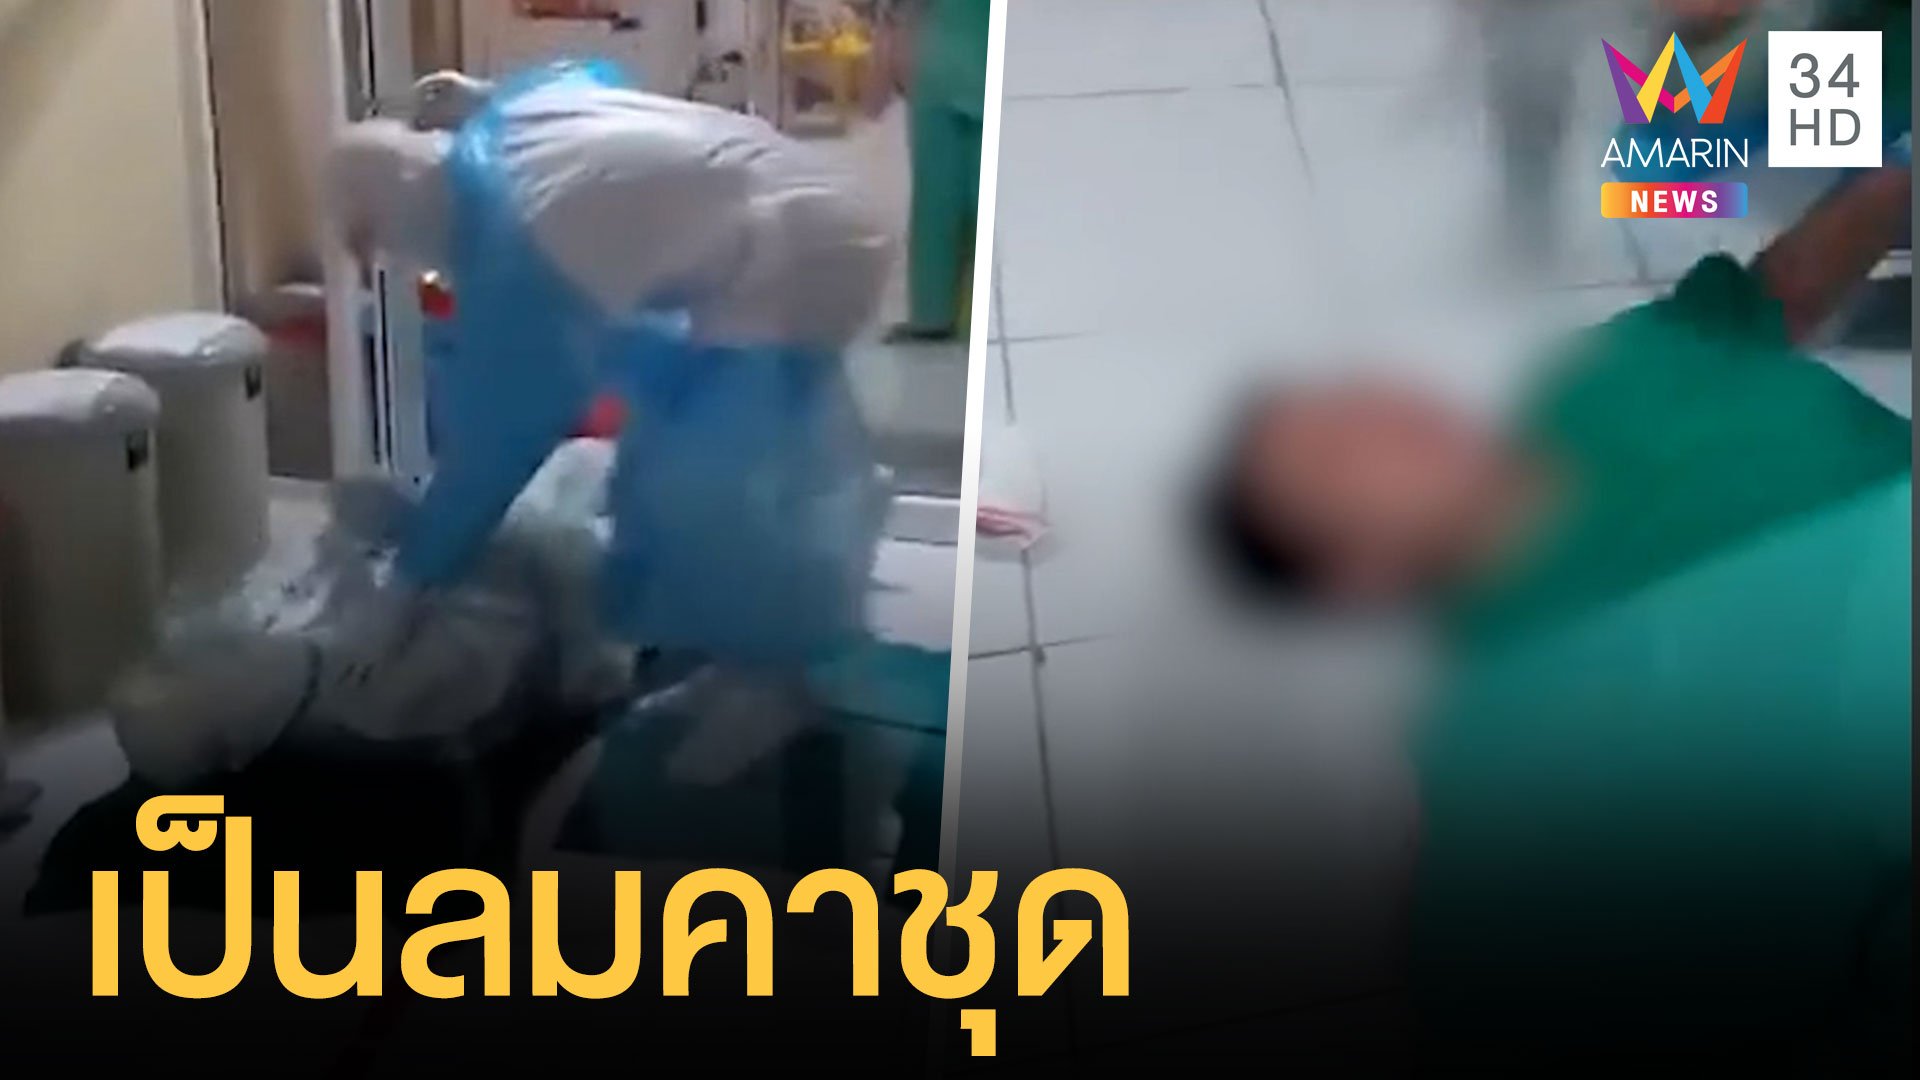 พยาบาลใส่ชุด PPE อากาศร้อนเป็นลมคาชุด | ข่าวอรุณอมรินทร์ | 4 ก.ค. 64 | AMARIN TVHD34